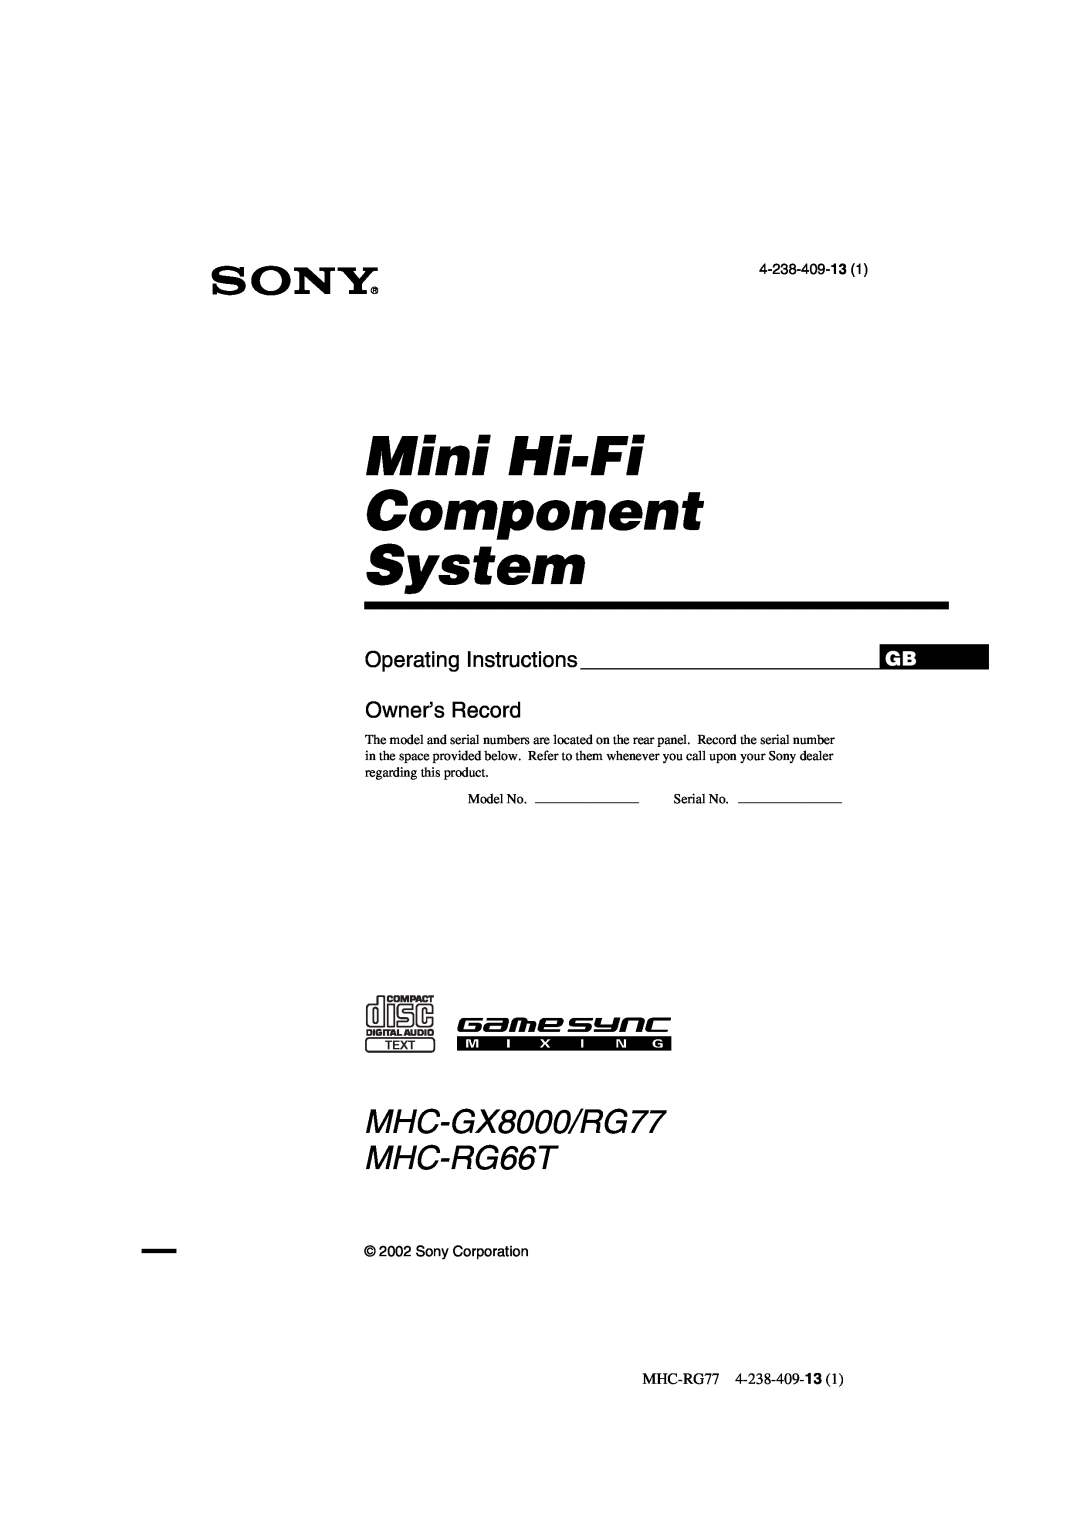 Sony operating instructions Mini Hi-Fi Component System, MHC-GX8000/RG77 MHC-RG66T, Operating Instructions, Serial No 